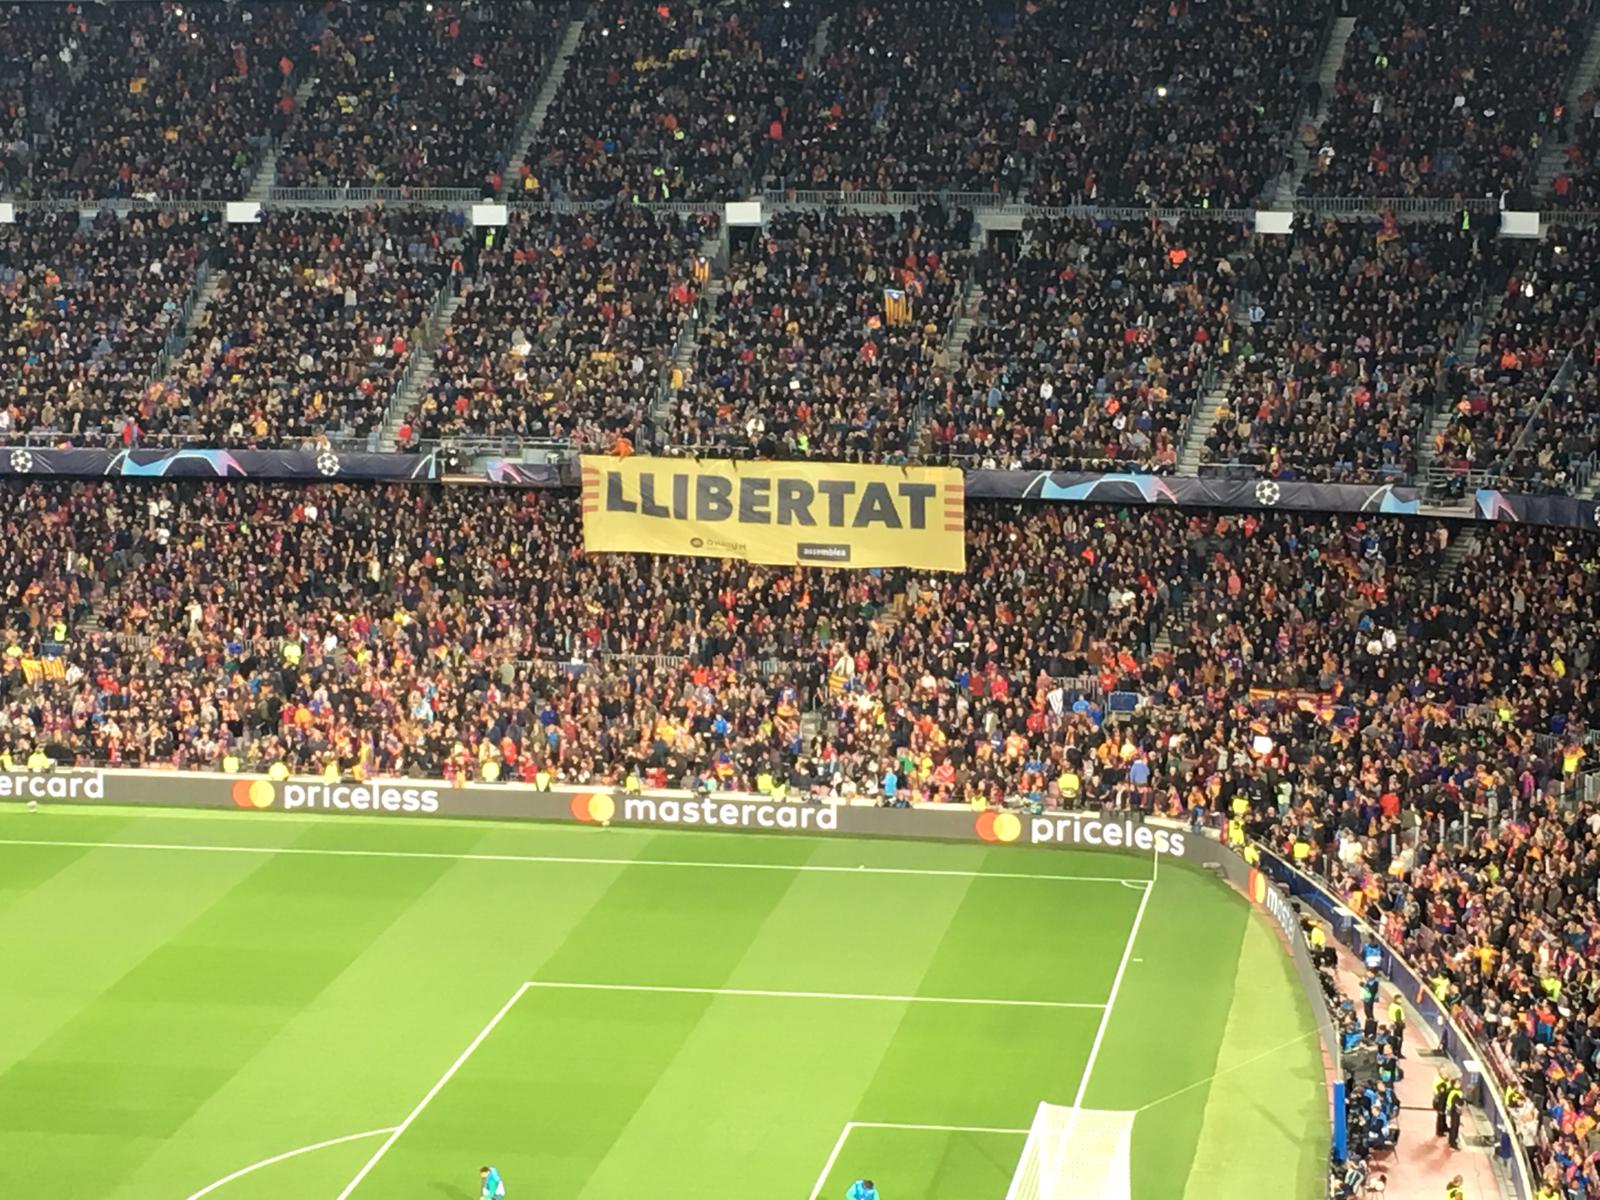 El Camp Nou se vuelve a reivindicar en la Champions: "Libertad"